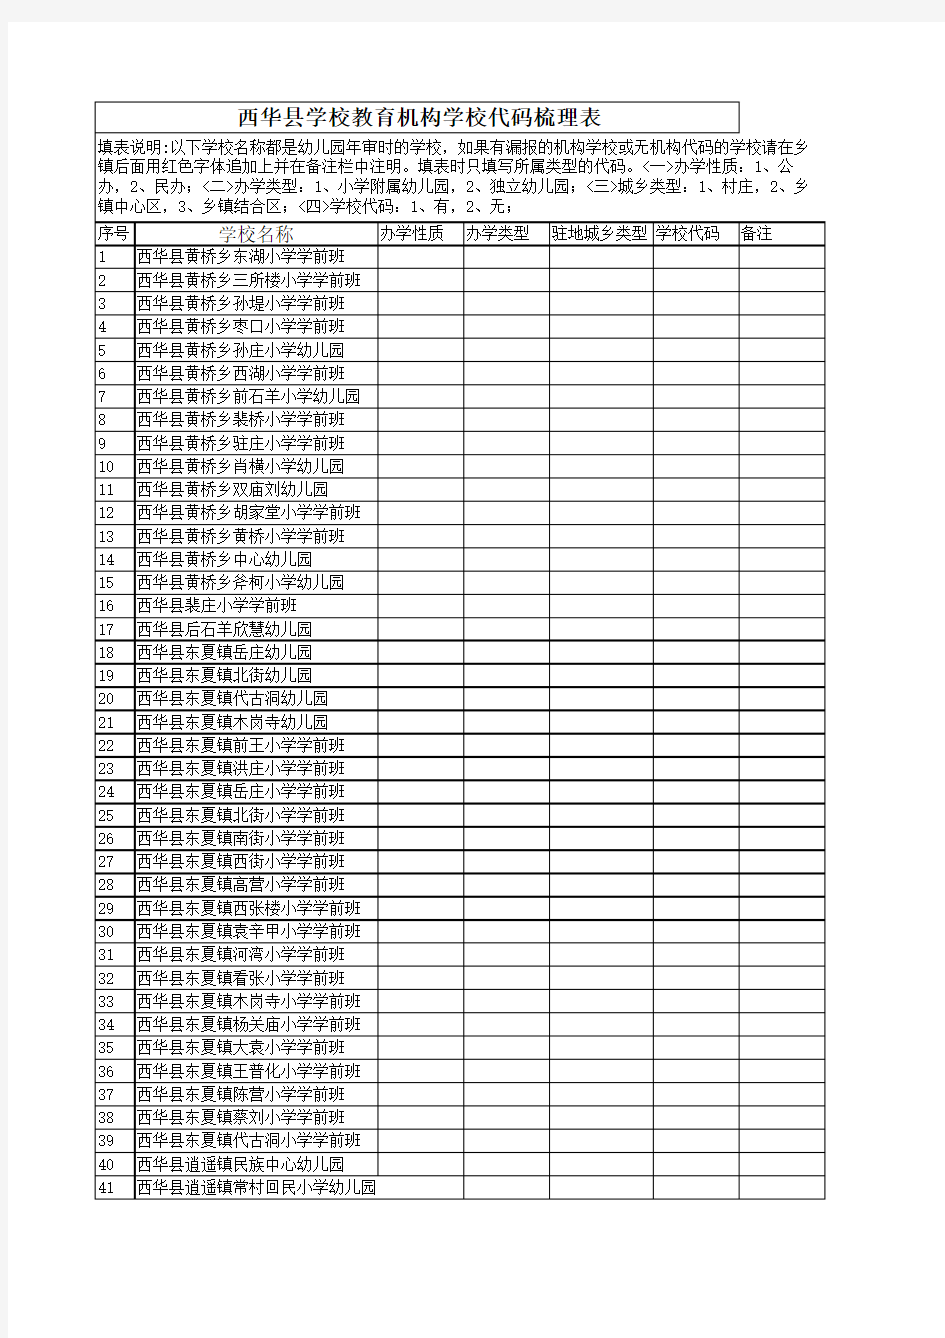 西华县学校教育机构学校代码梳理表